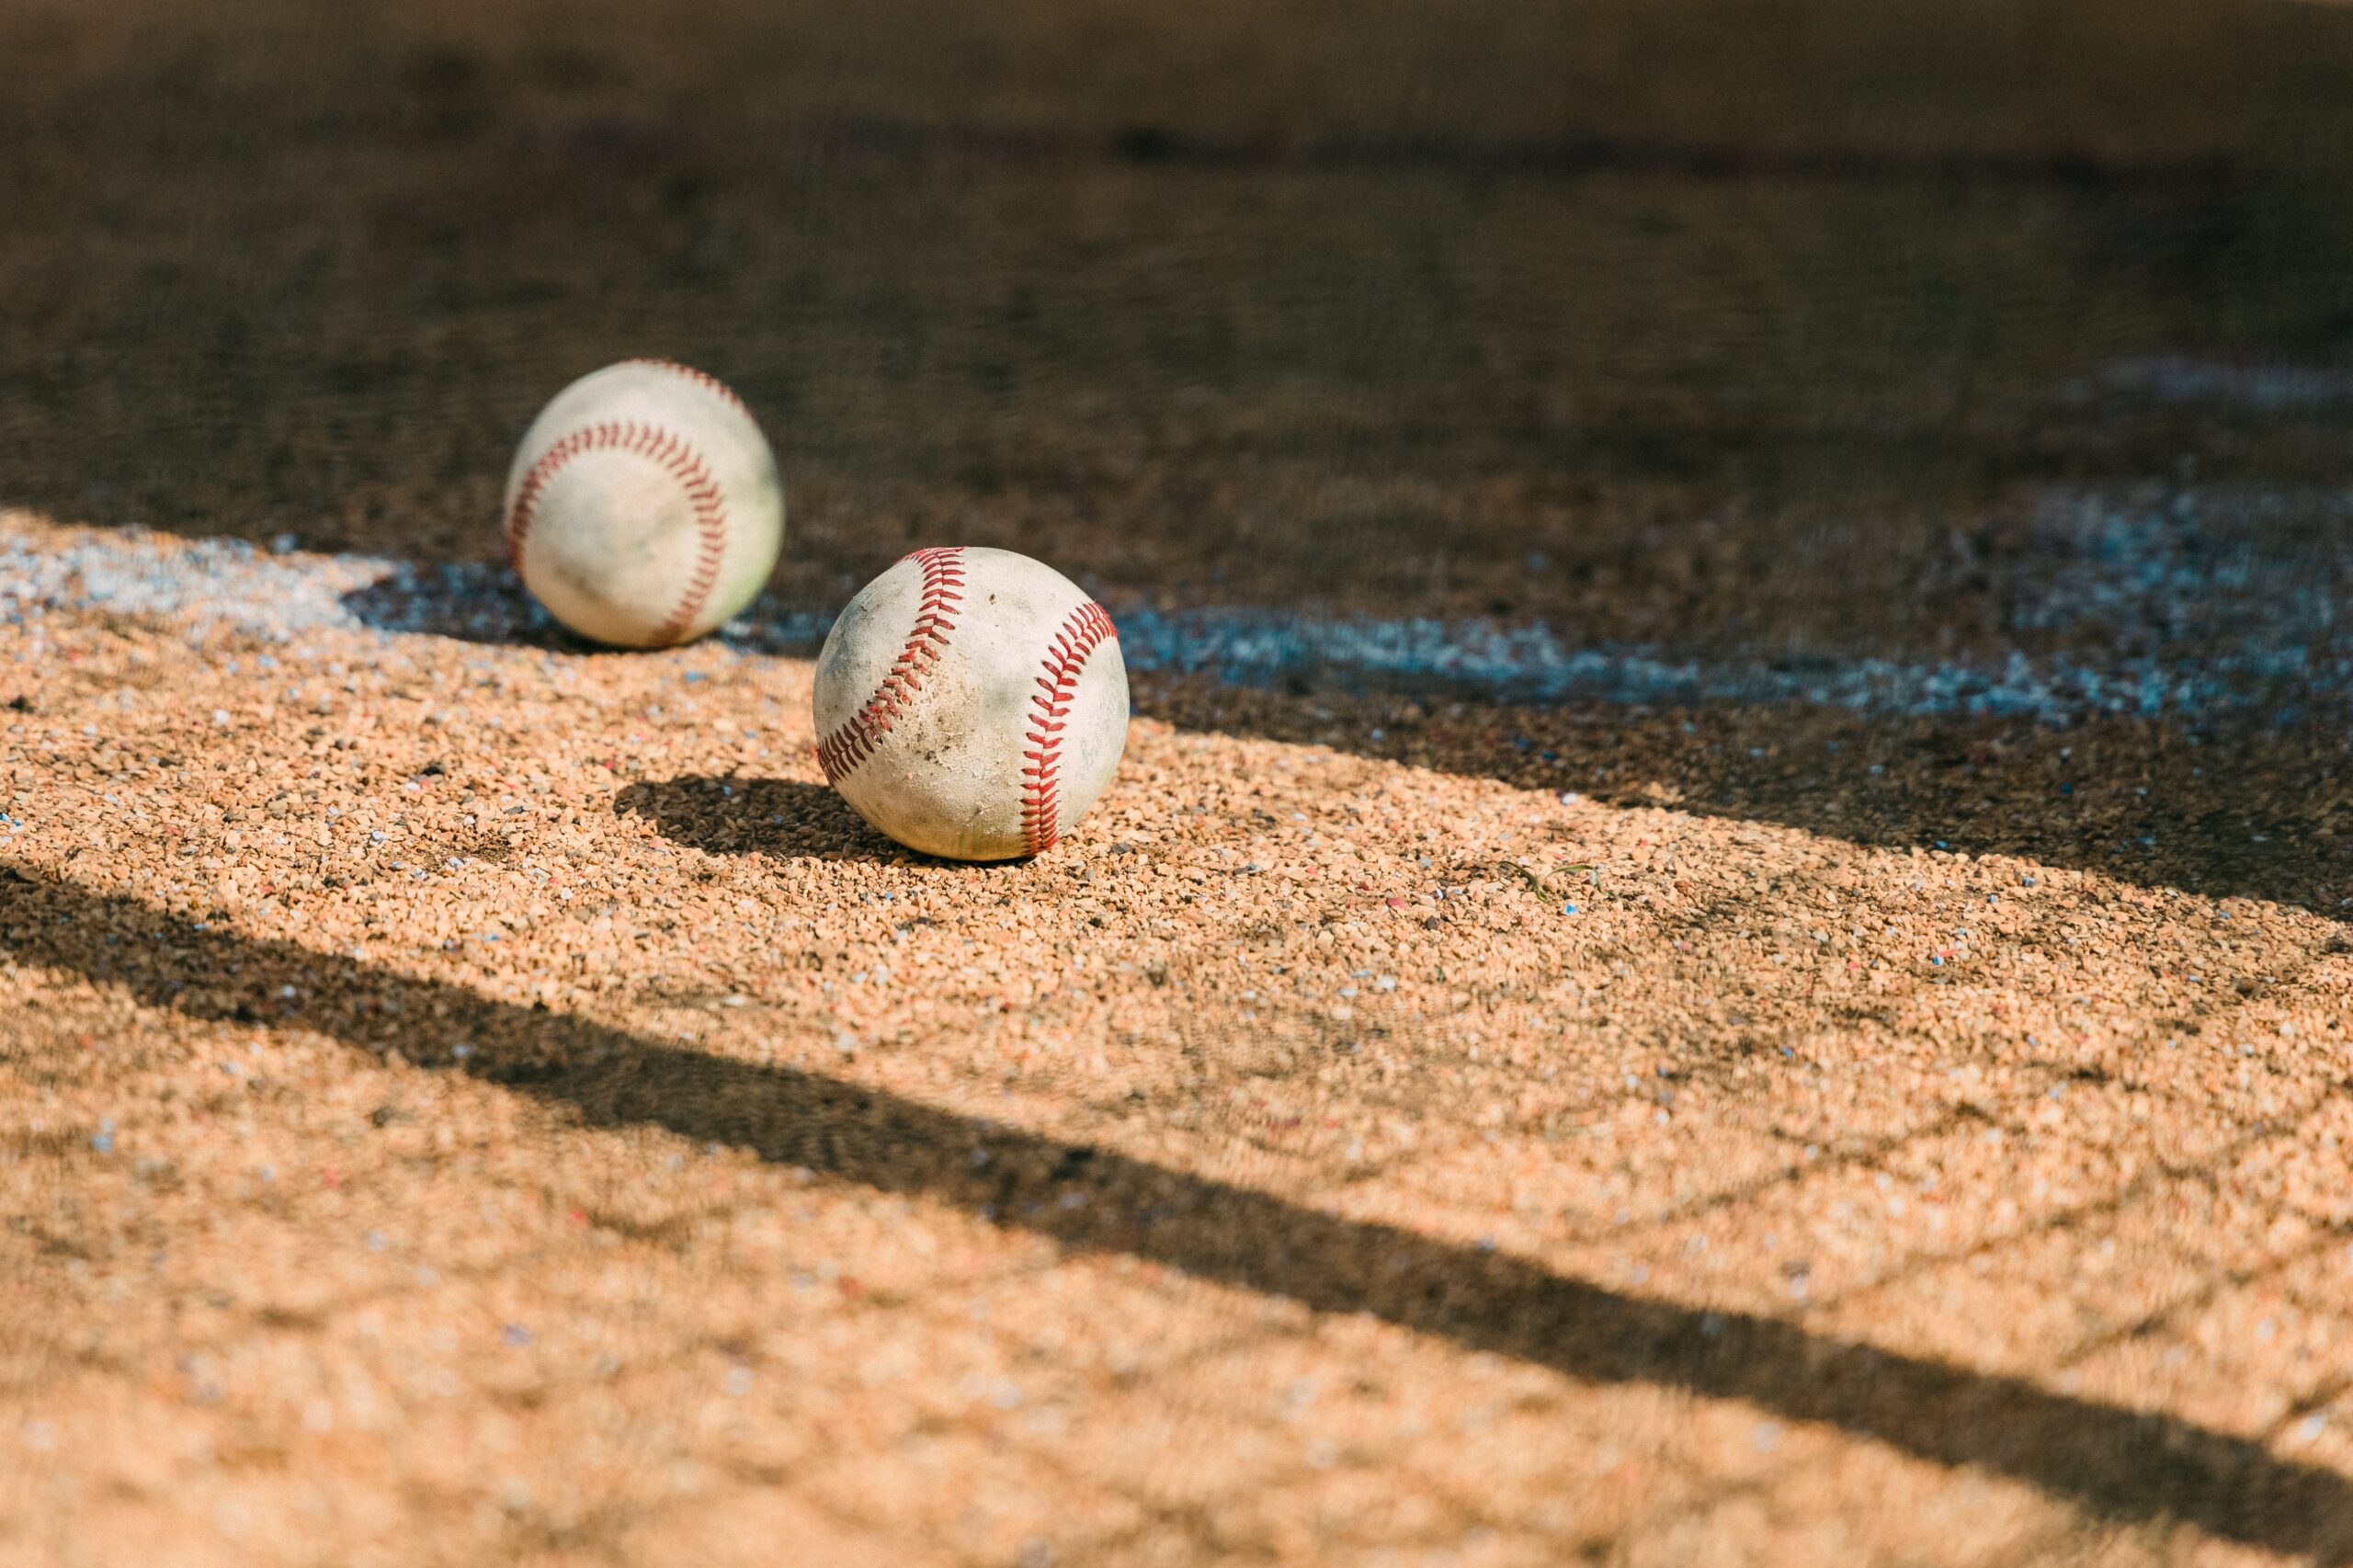 baseballs resting in dirt on baseball field